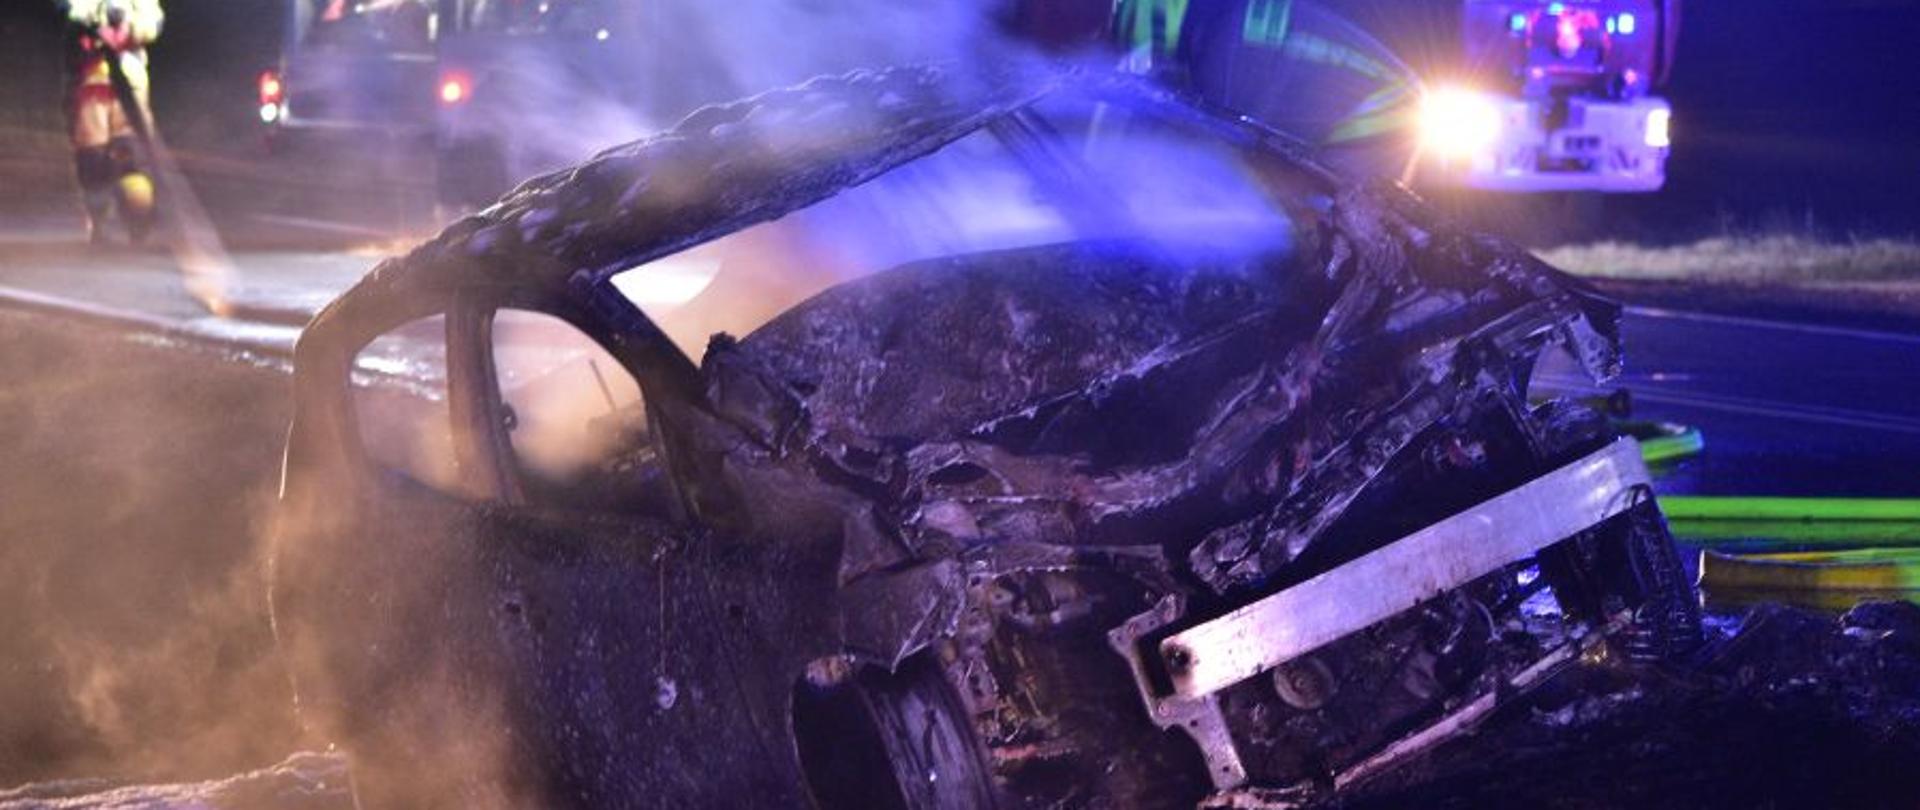 Na zdjęciu widać spalony samochód osobowy. Z auta unosi się para wodna, jest pora nocna. W tle widać samochód pożarniczy oraz strażaków zwijających sprzęt po akcji